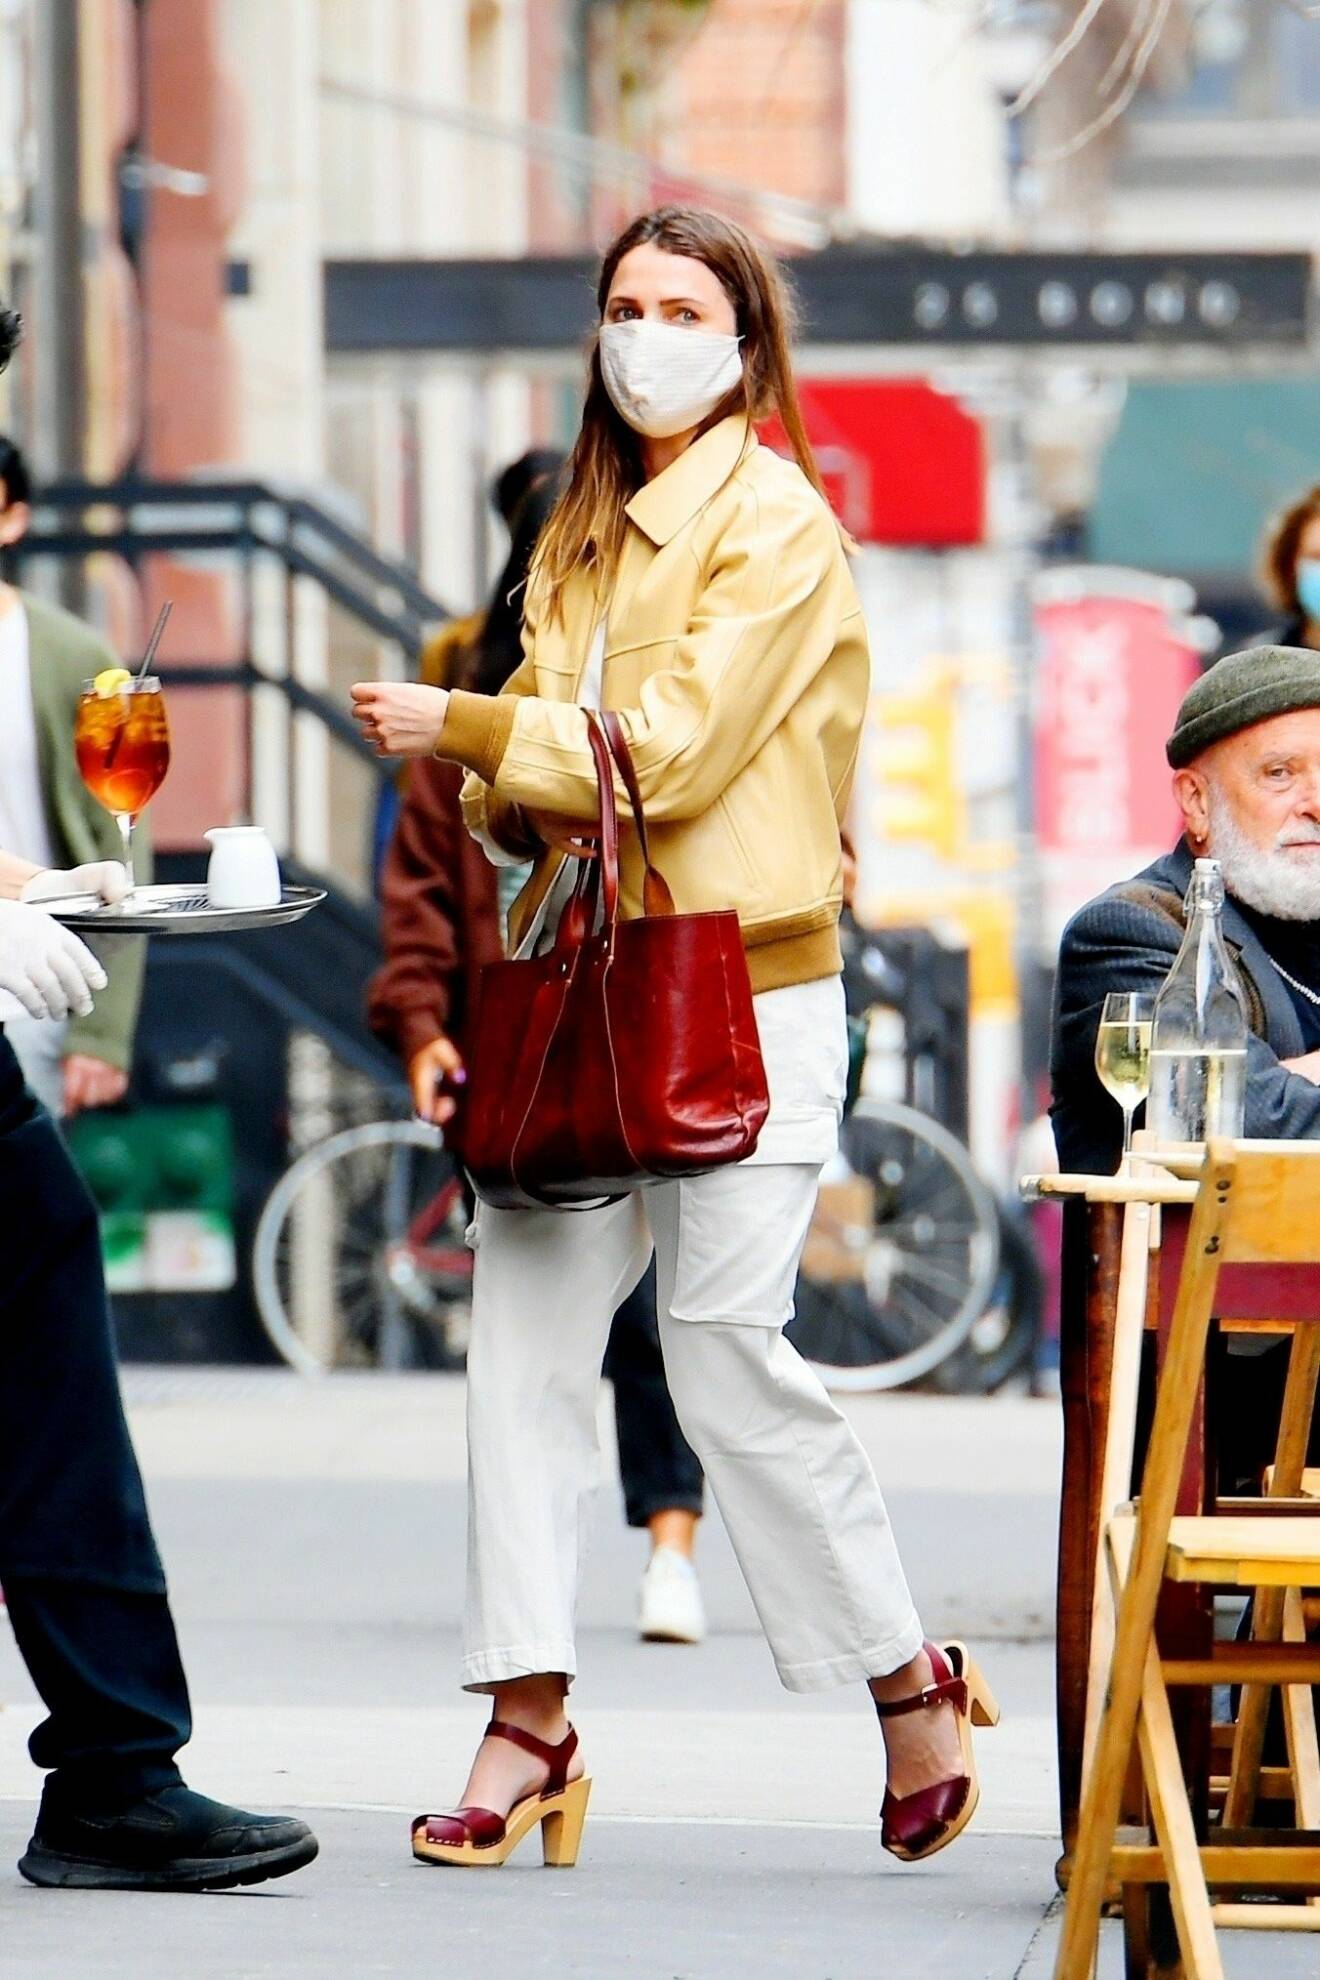 Skådespelerskan Keri Russel i burgundy-färgade träsandaler. Hon matchar med väska i samma nyans, vita, croppade byxor med ficka på låret, ljusgul skinnjacka och över ansiktet bär hon ett vitt munskydd.